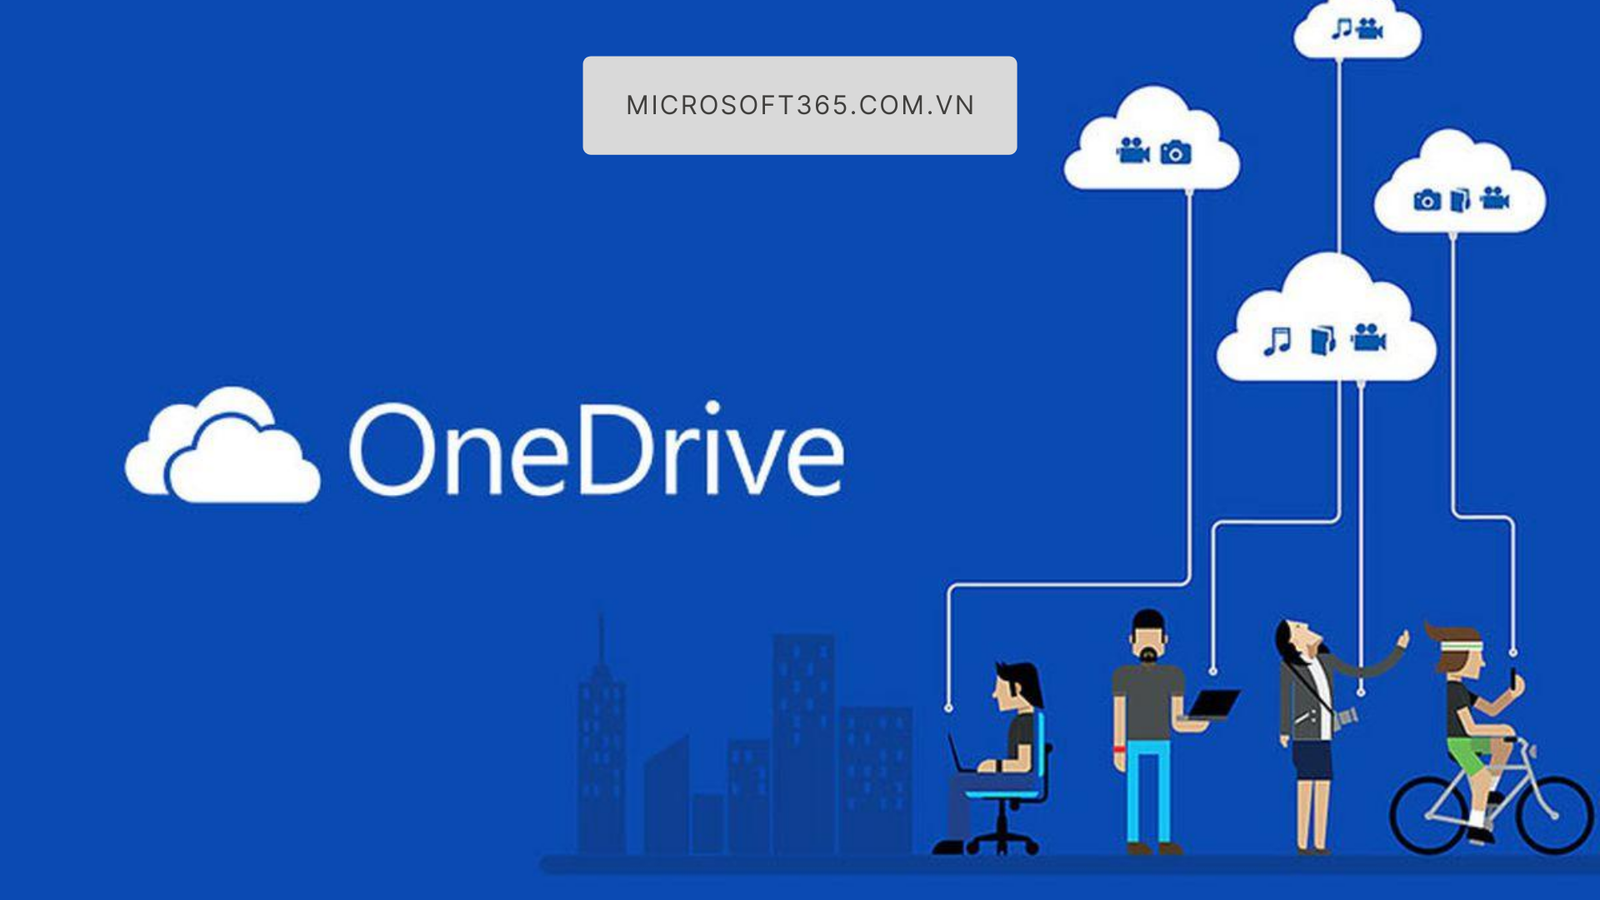 Microsoft OneDrive: dịch vụ lưu trữ đám mây bảo mật cấp cao